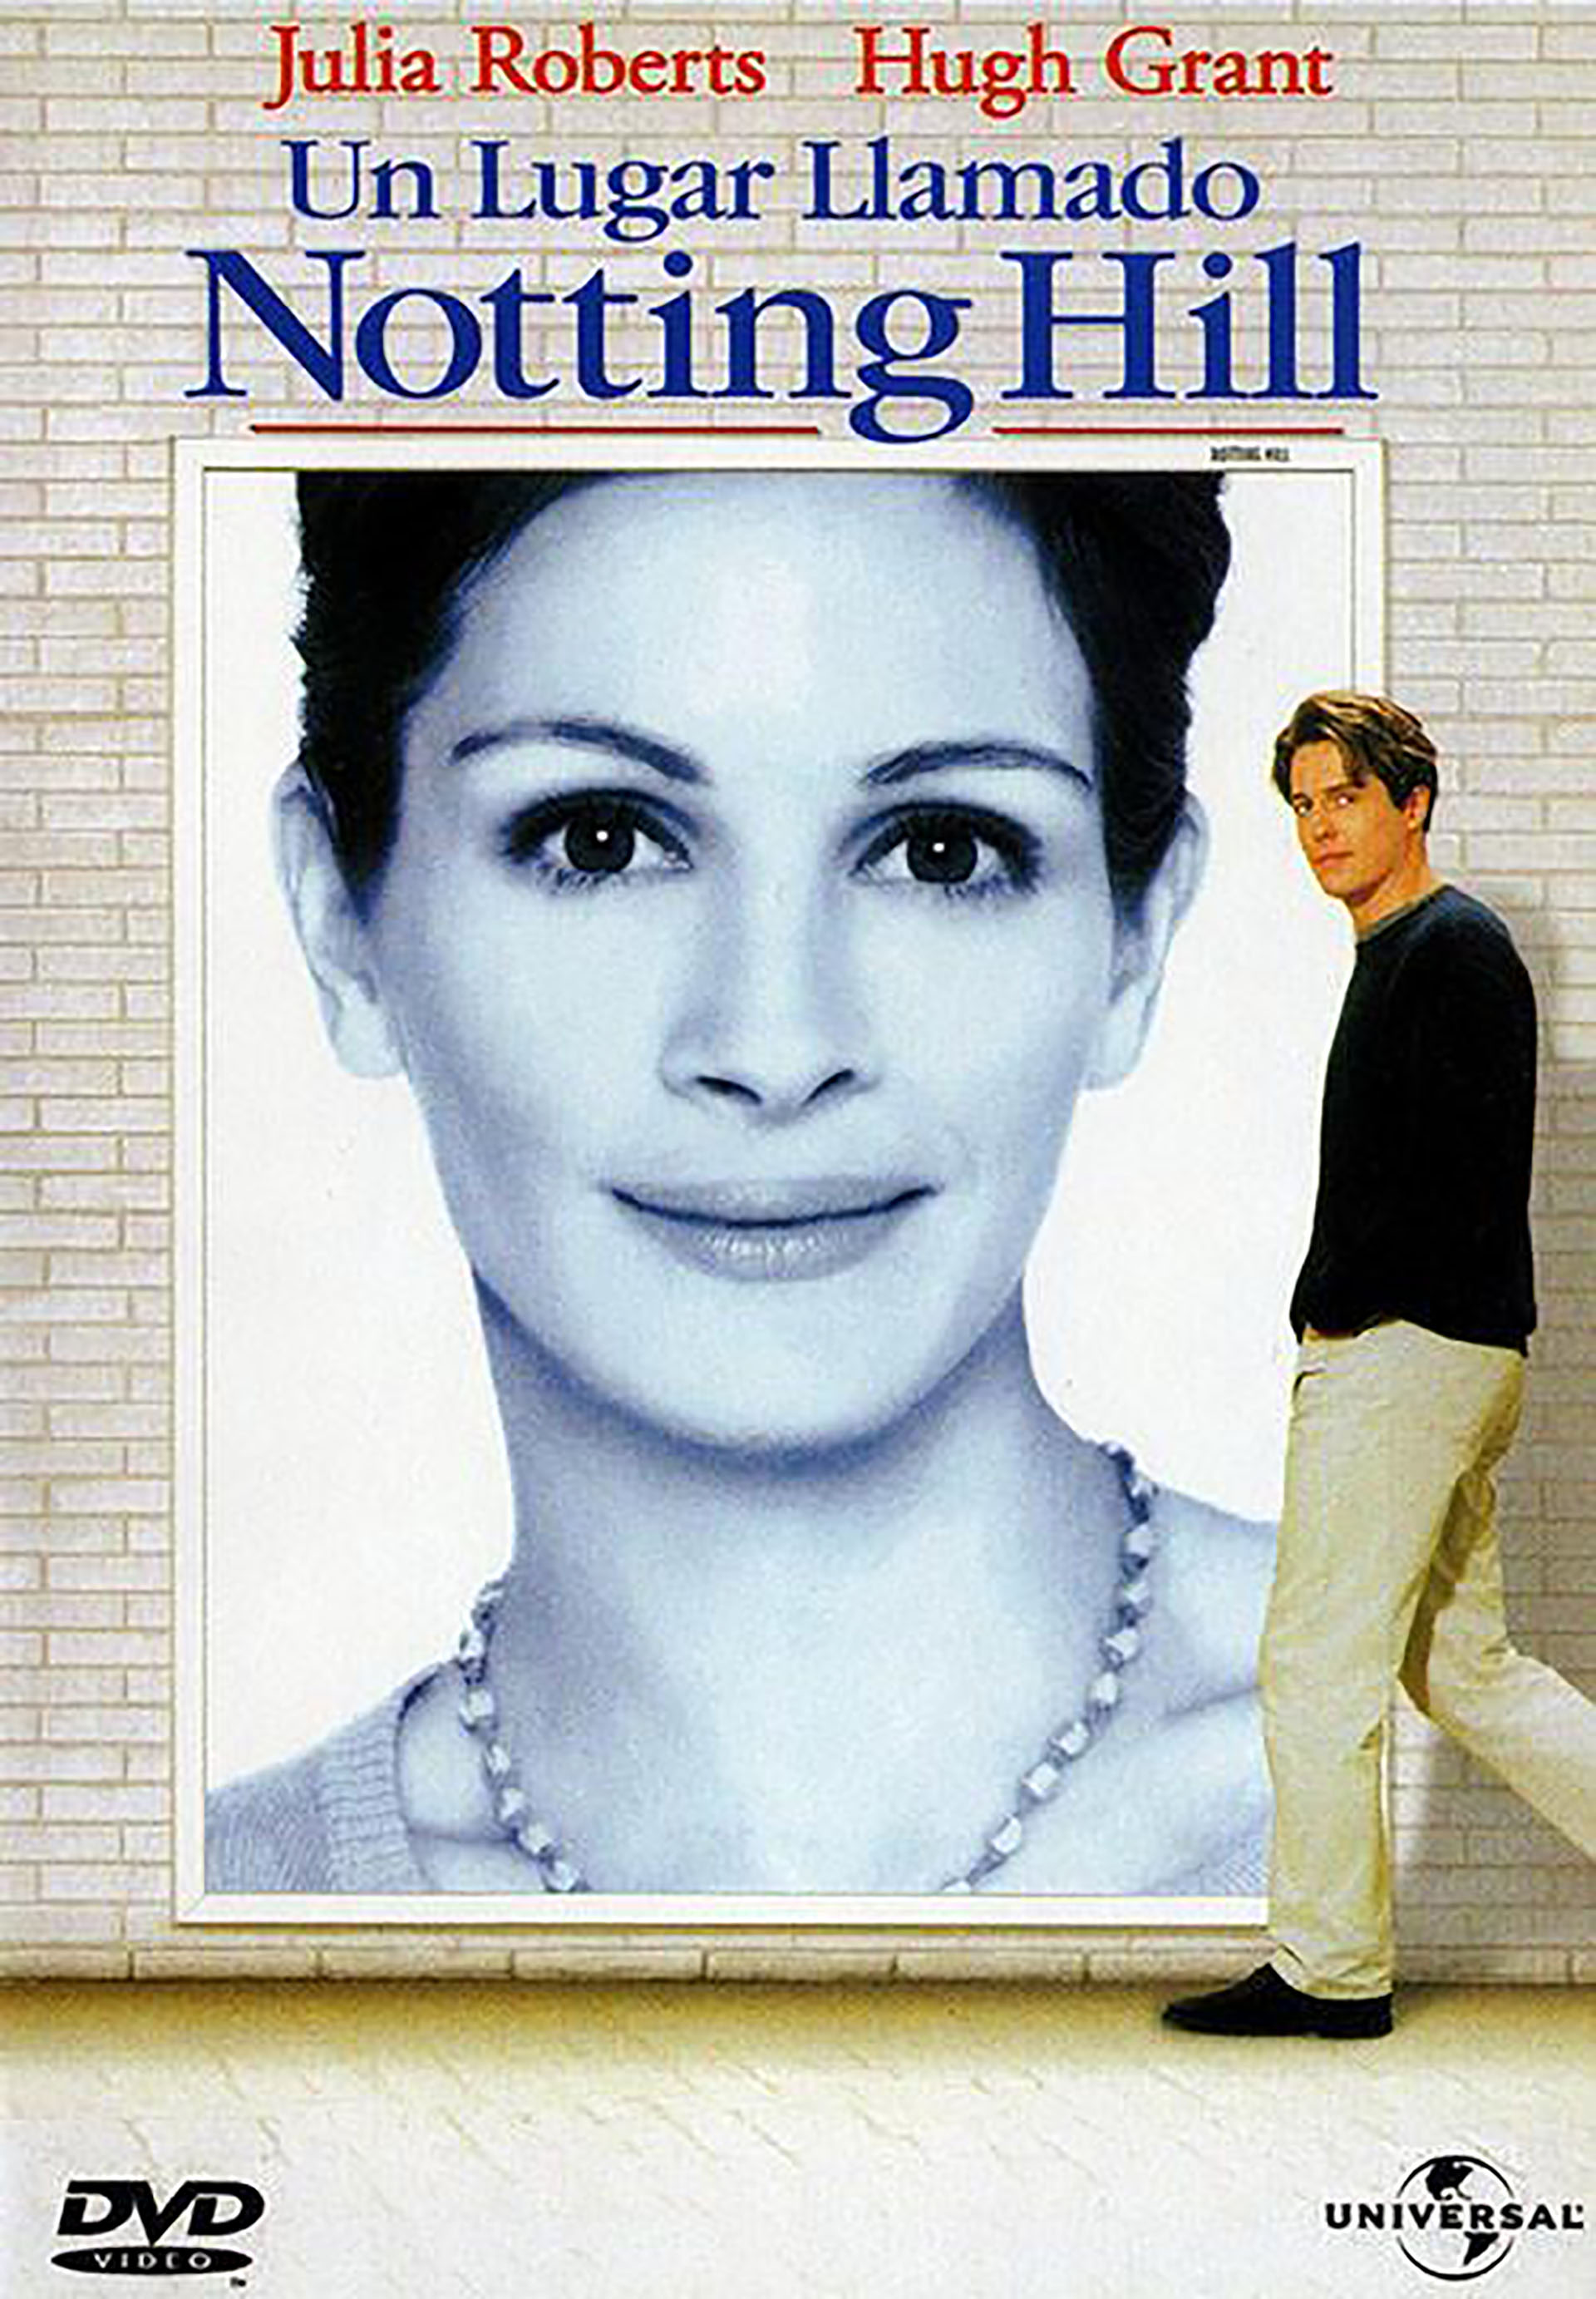 Durante la década del 90 se estrenaron más de cien películas románticas. Muy pocas alcanzaron categoría de clásico: Un lugar llamado Notting Hill estuvo entre las elegidas